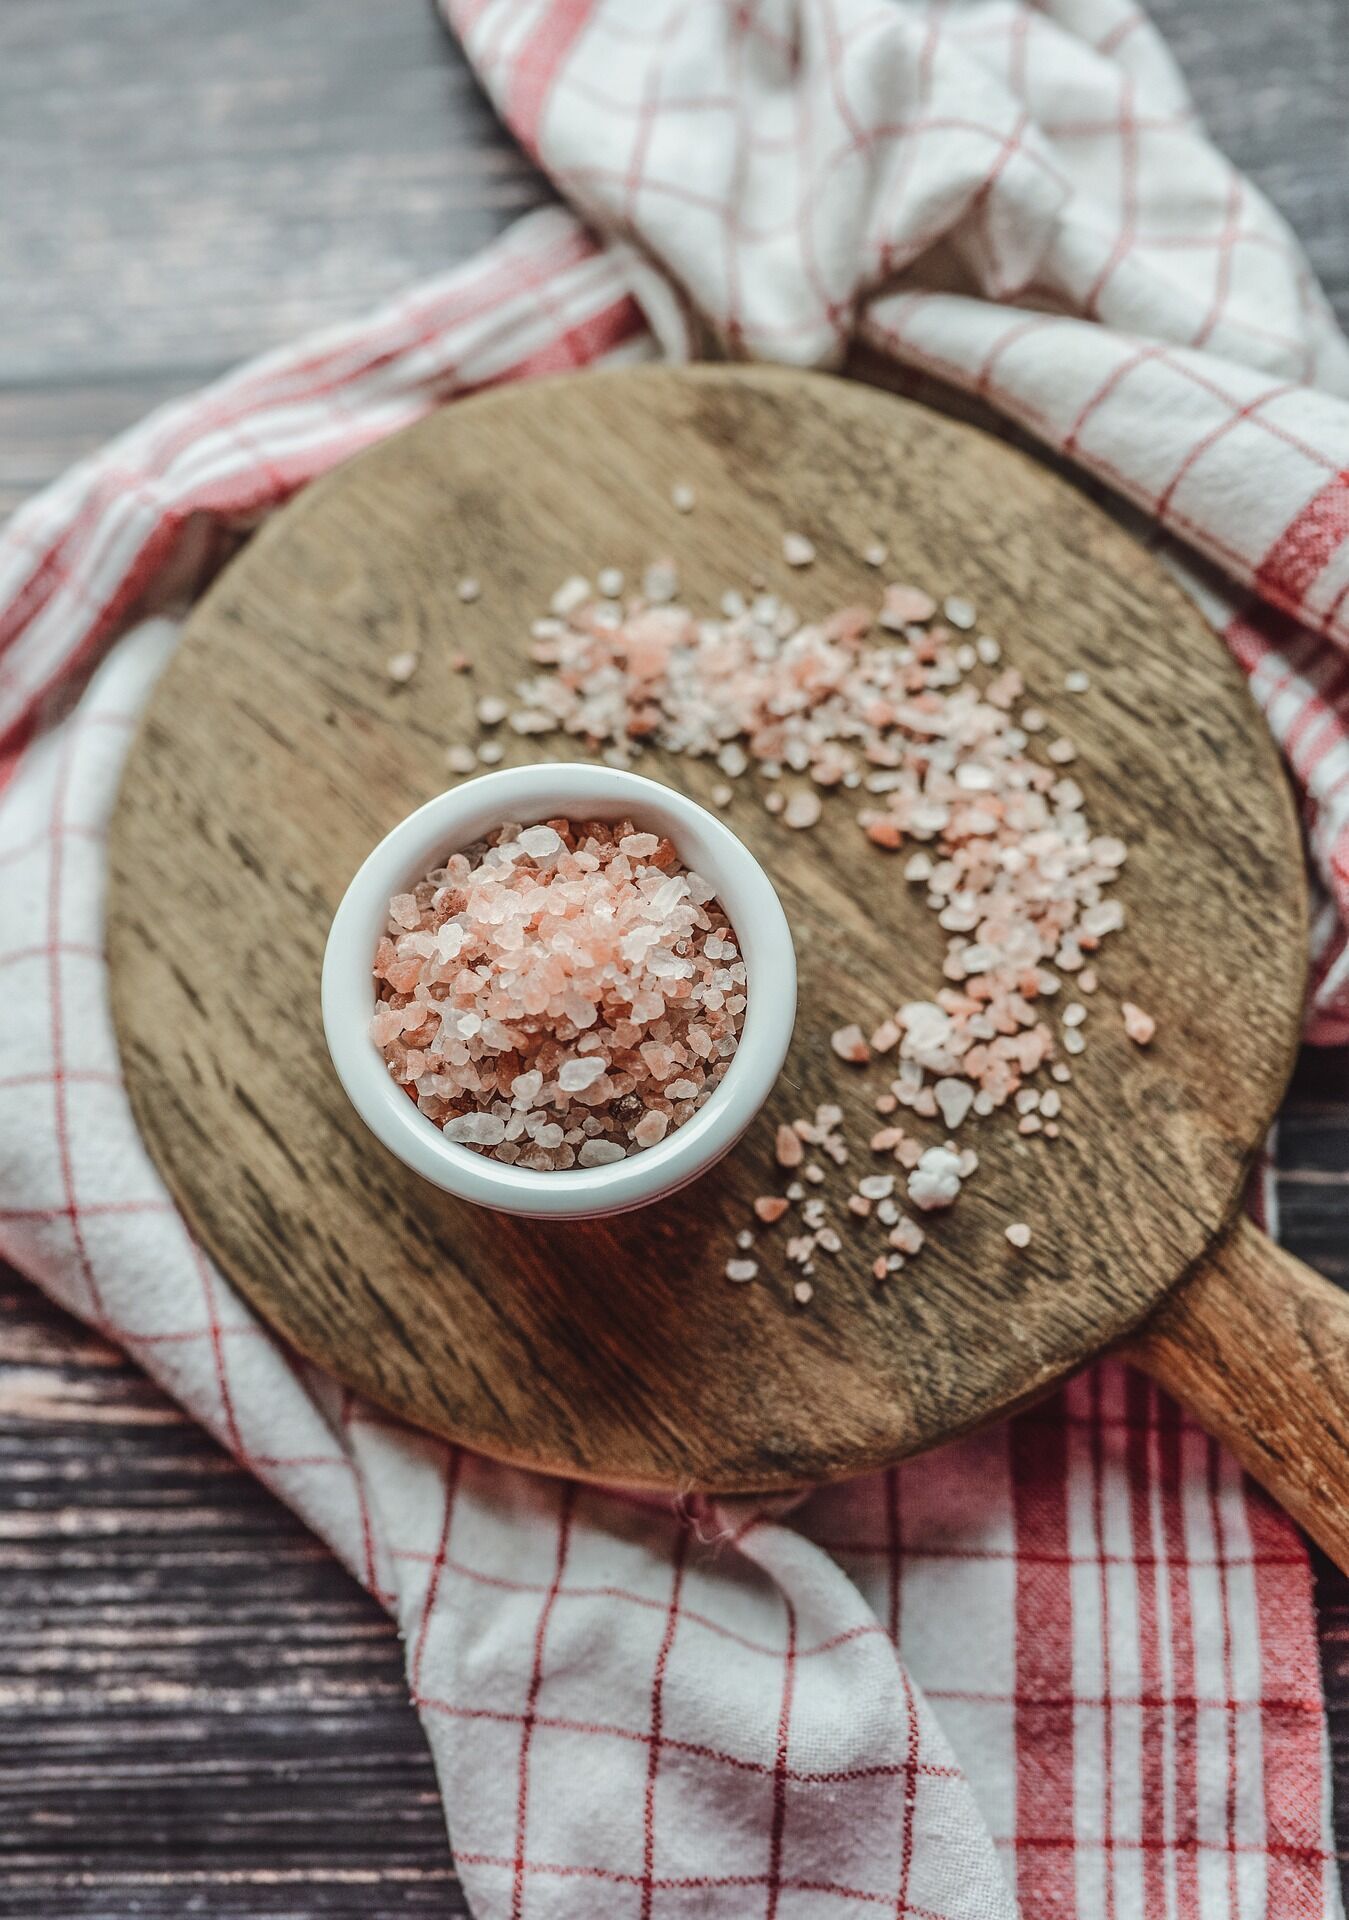 Скільки солі можна додавати в страви